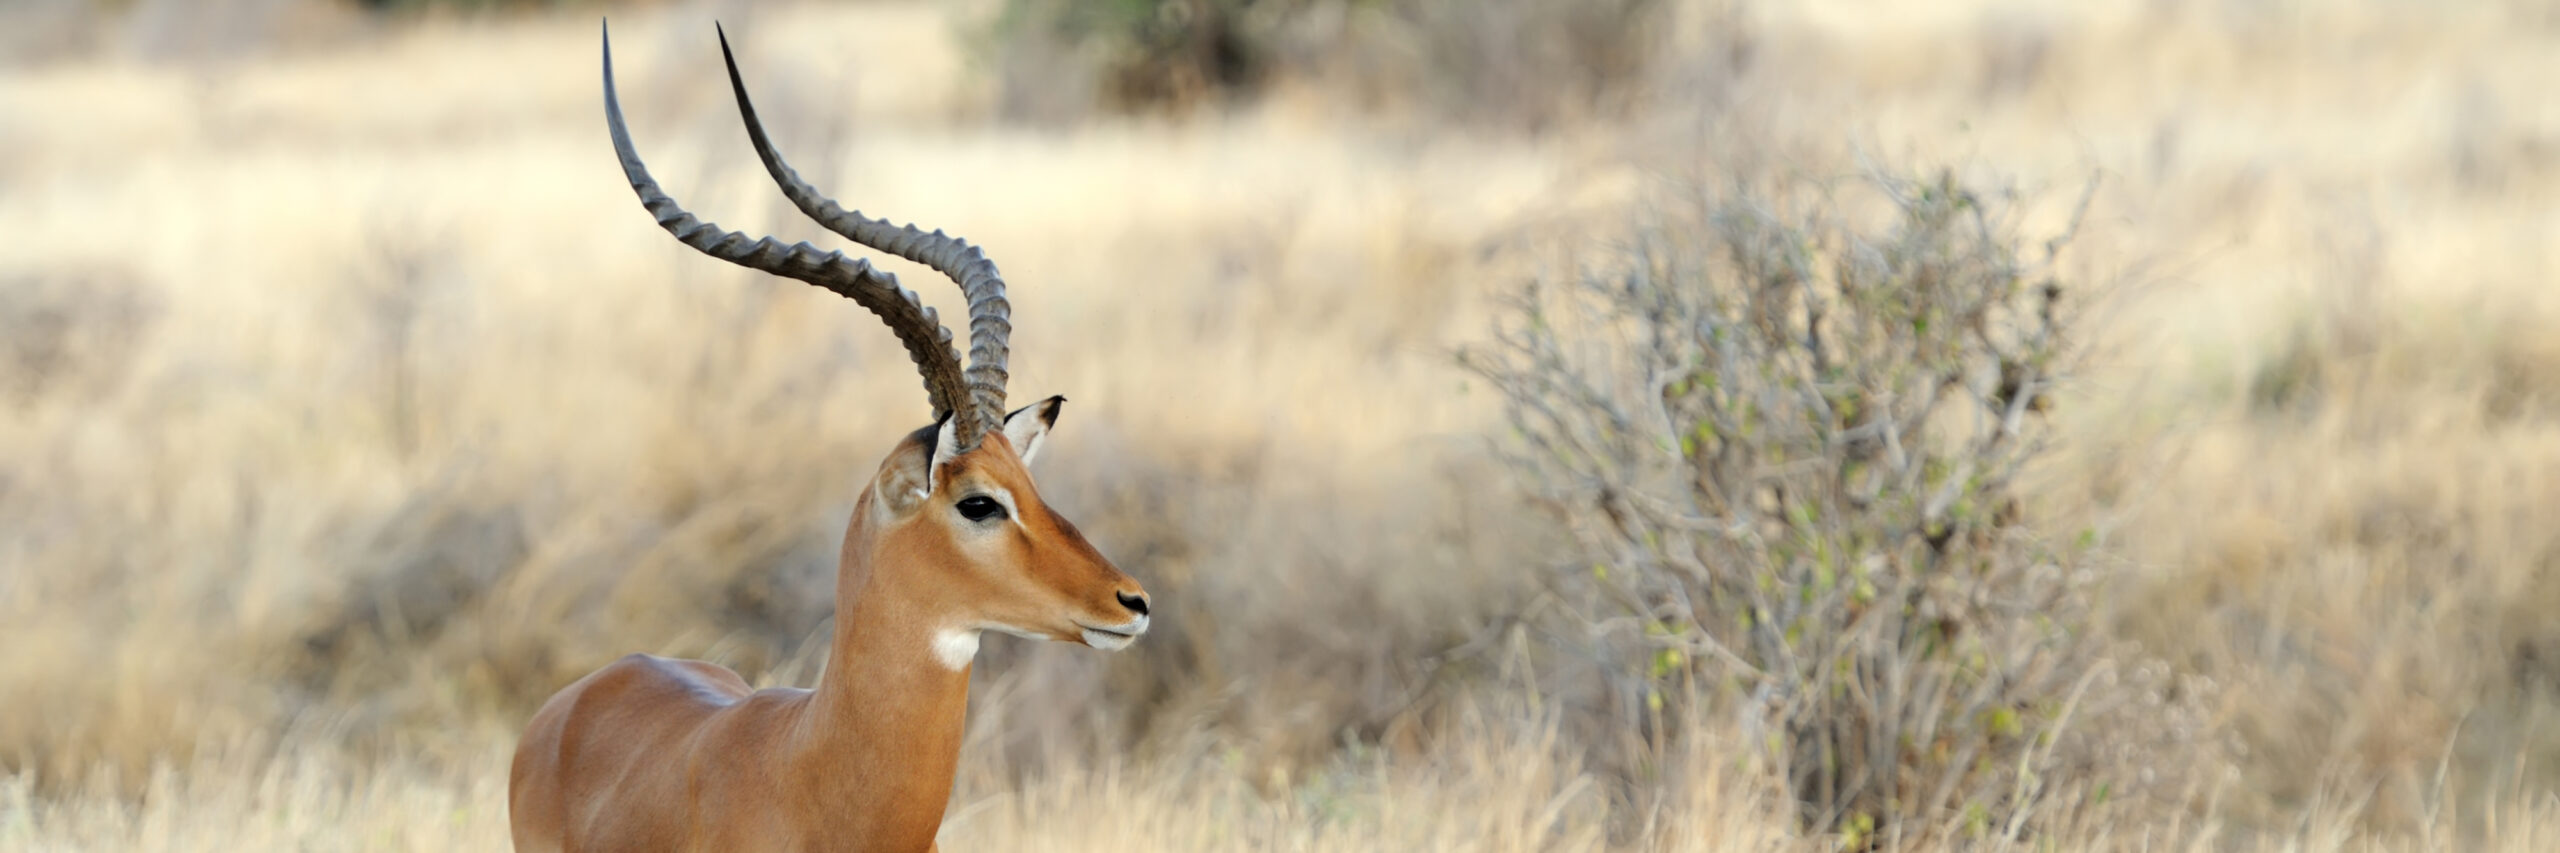 southern-impala